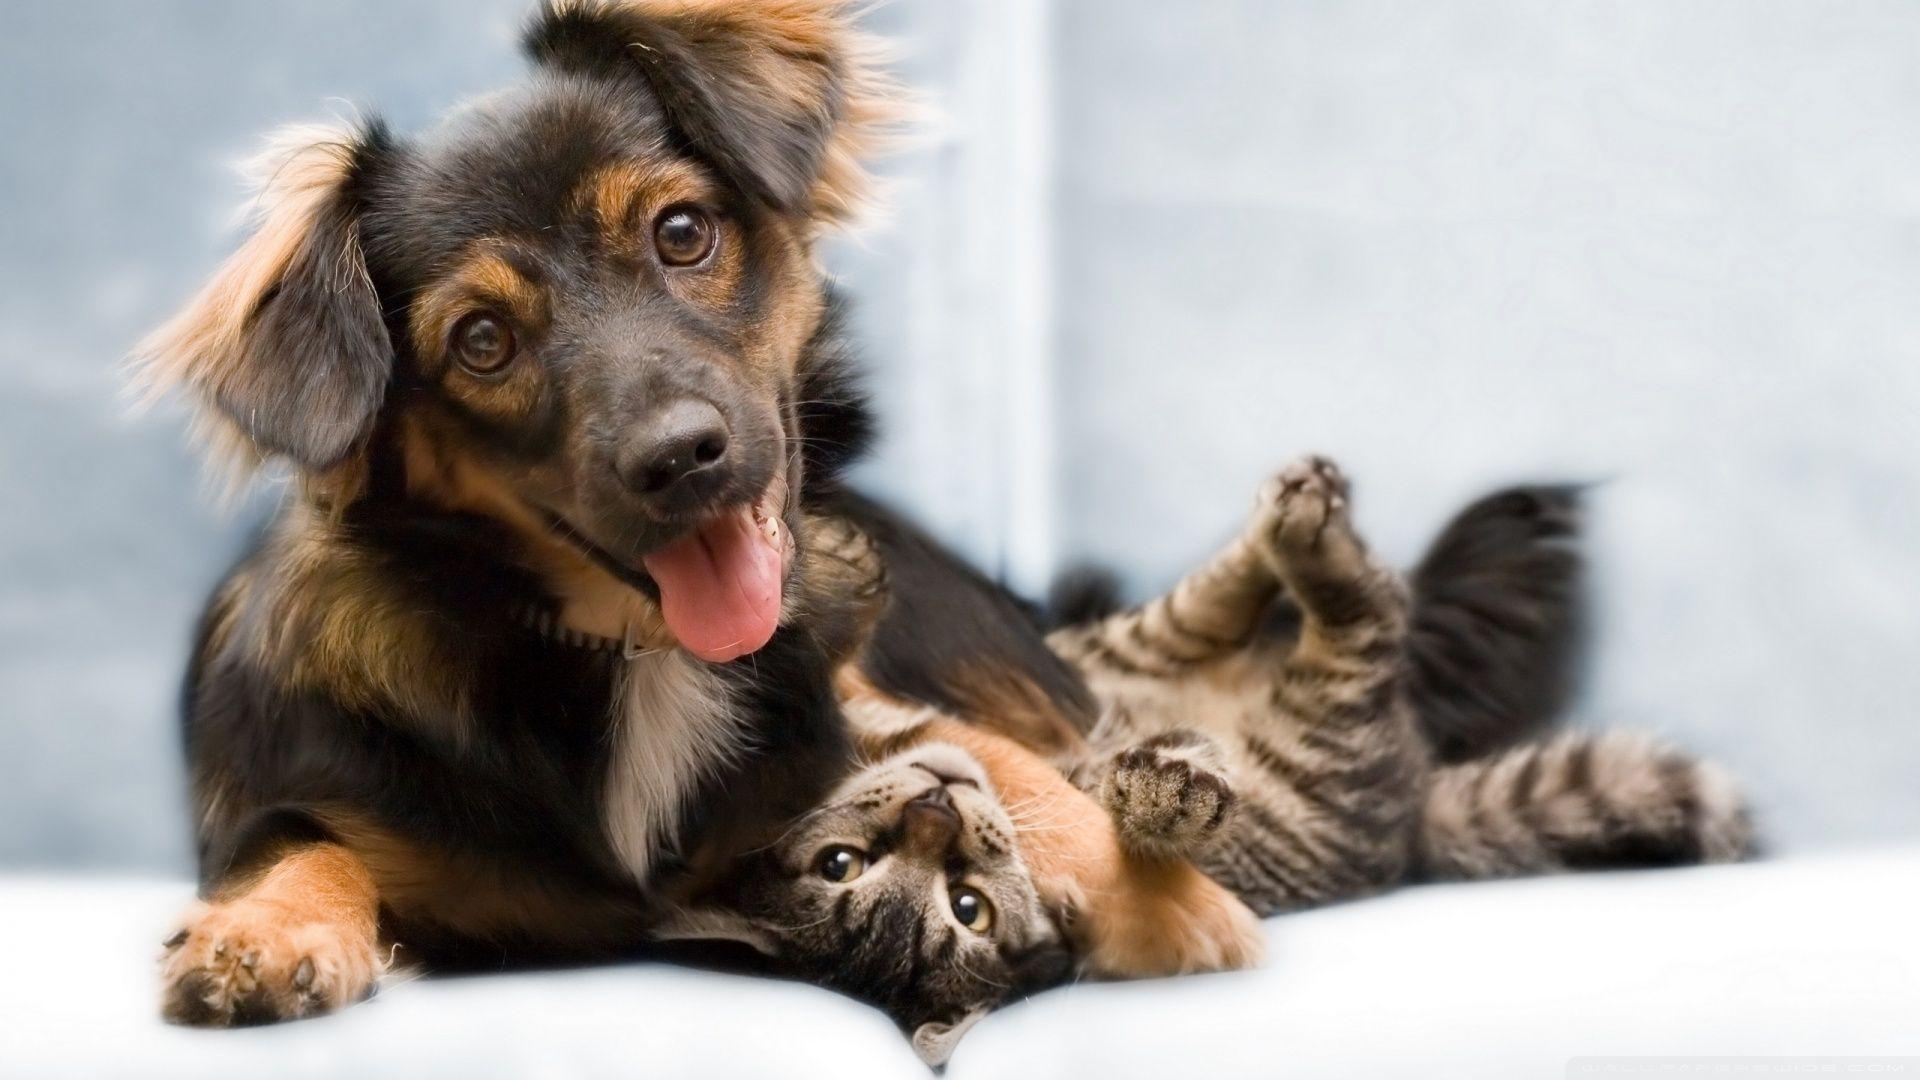 Dog And Cat Friendship HD desktop wallpaper, High Definition